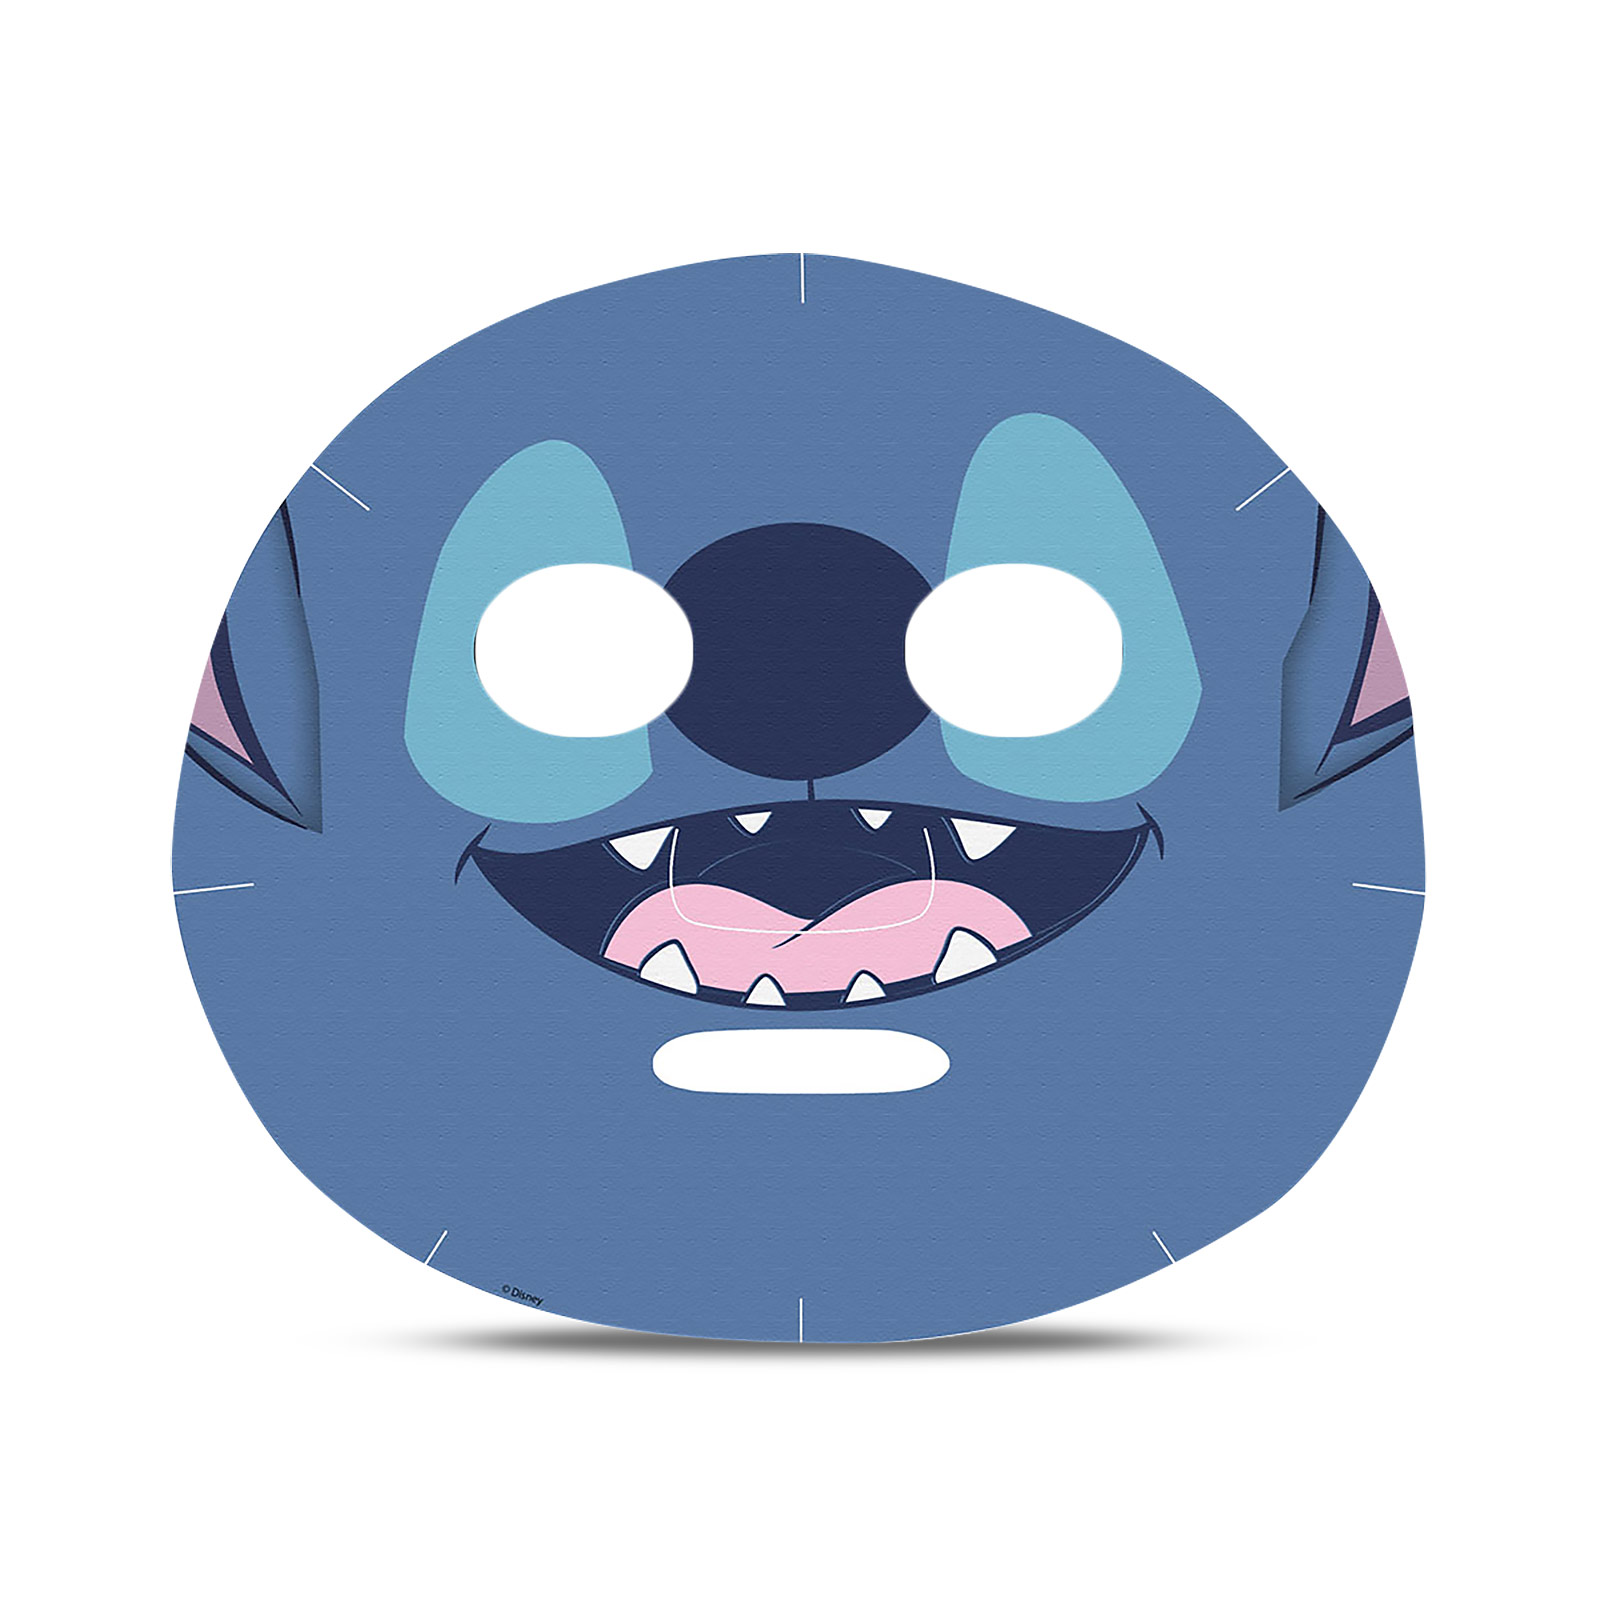 Disney Lilo & Stitch - Masque de Sheet